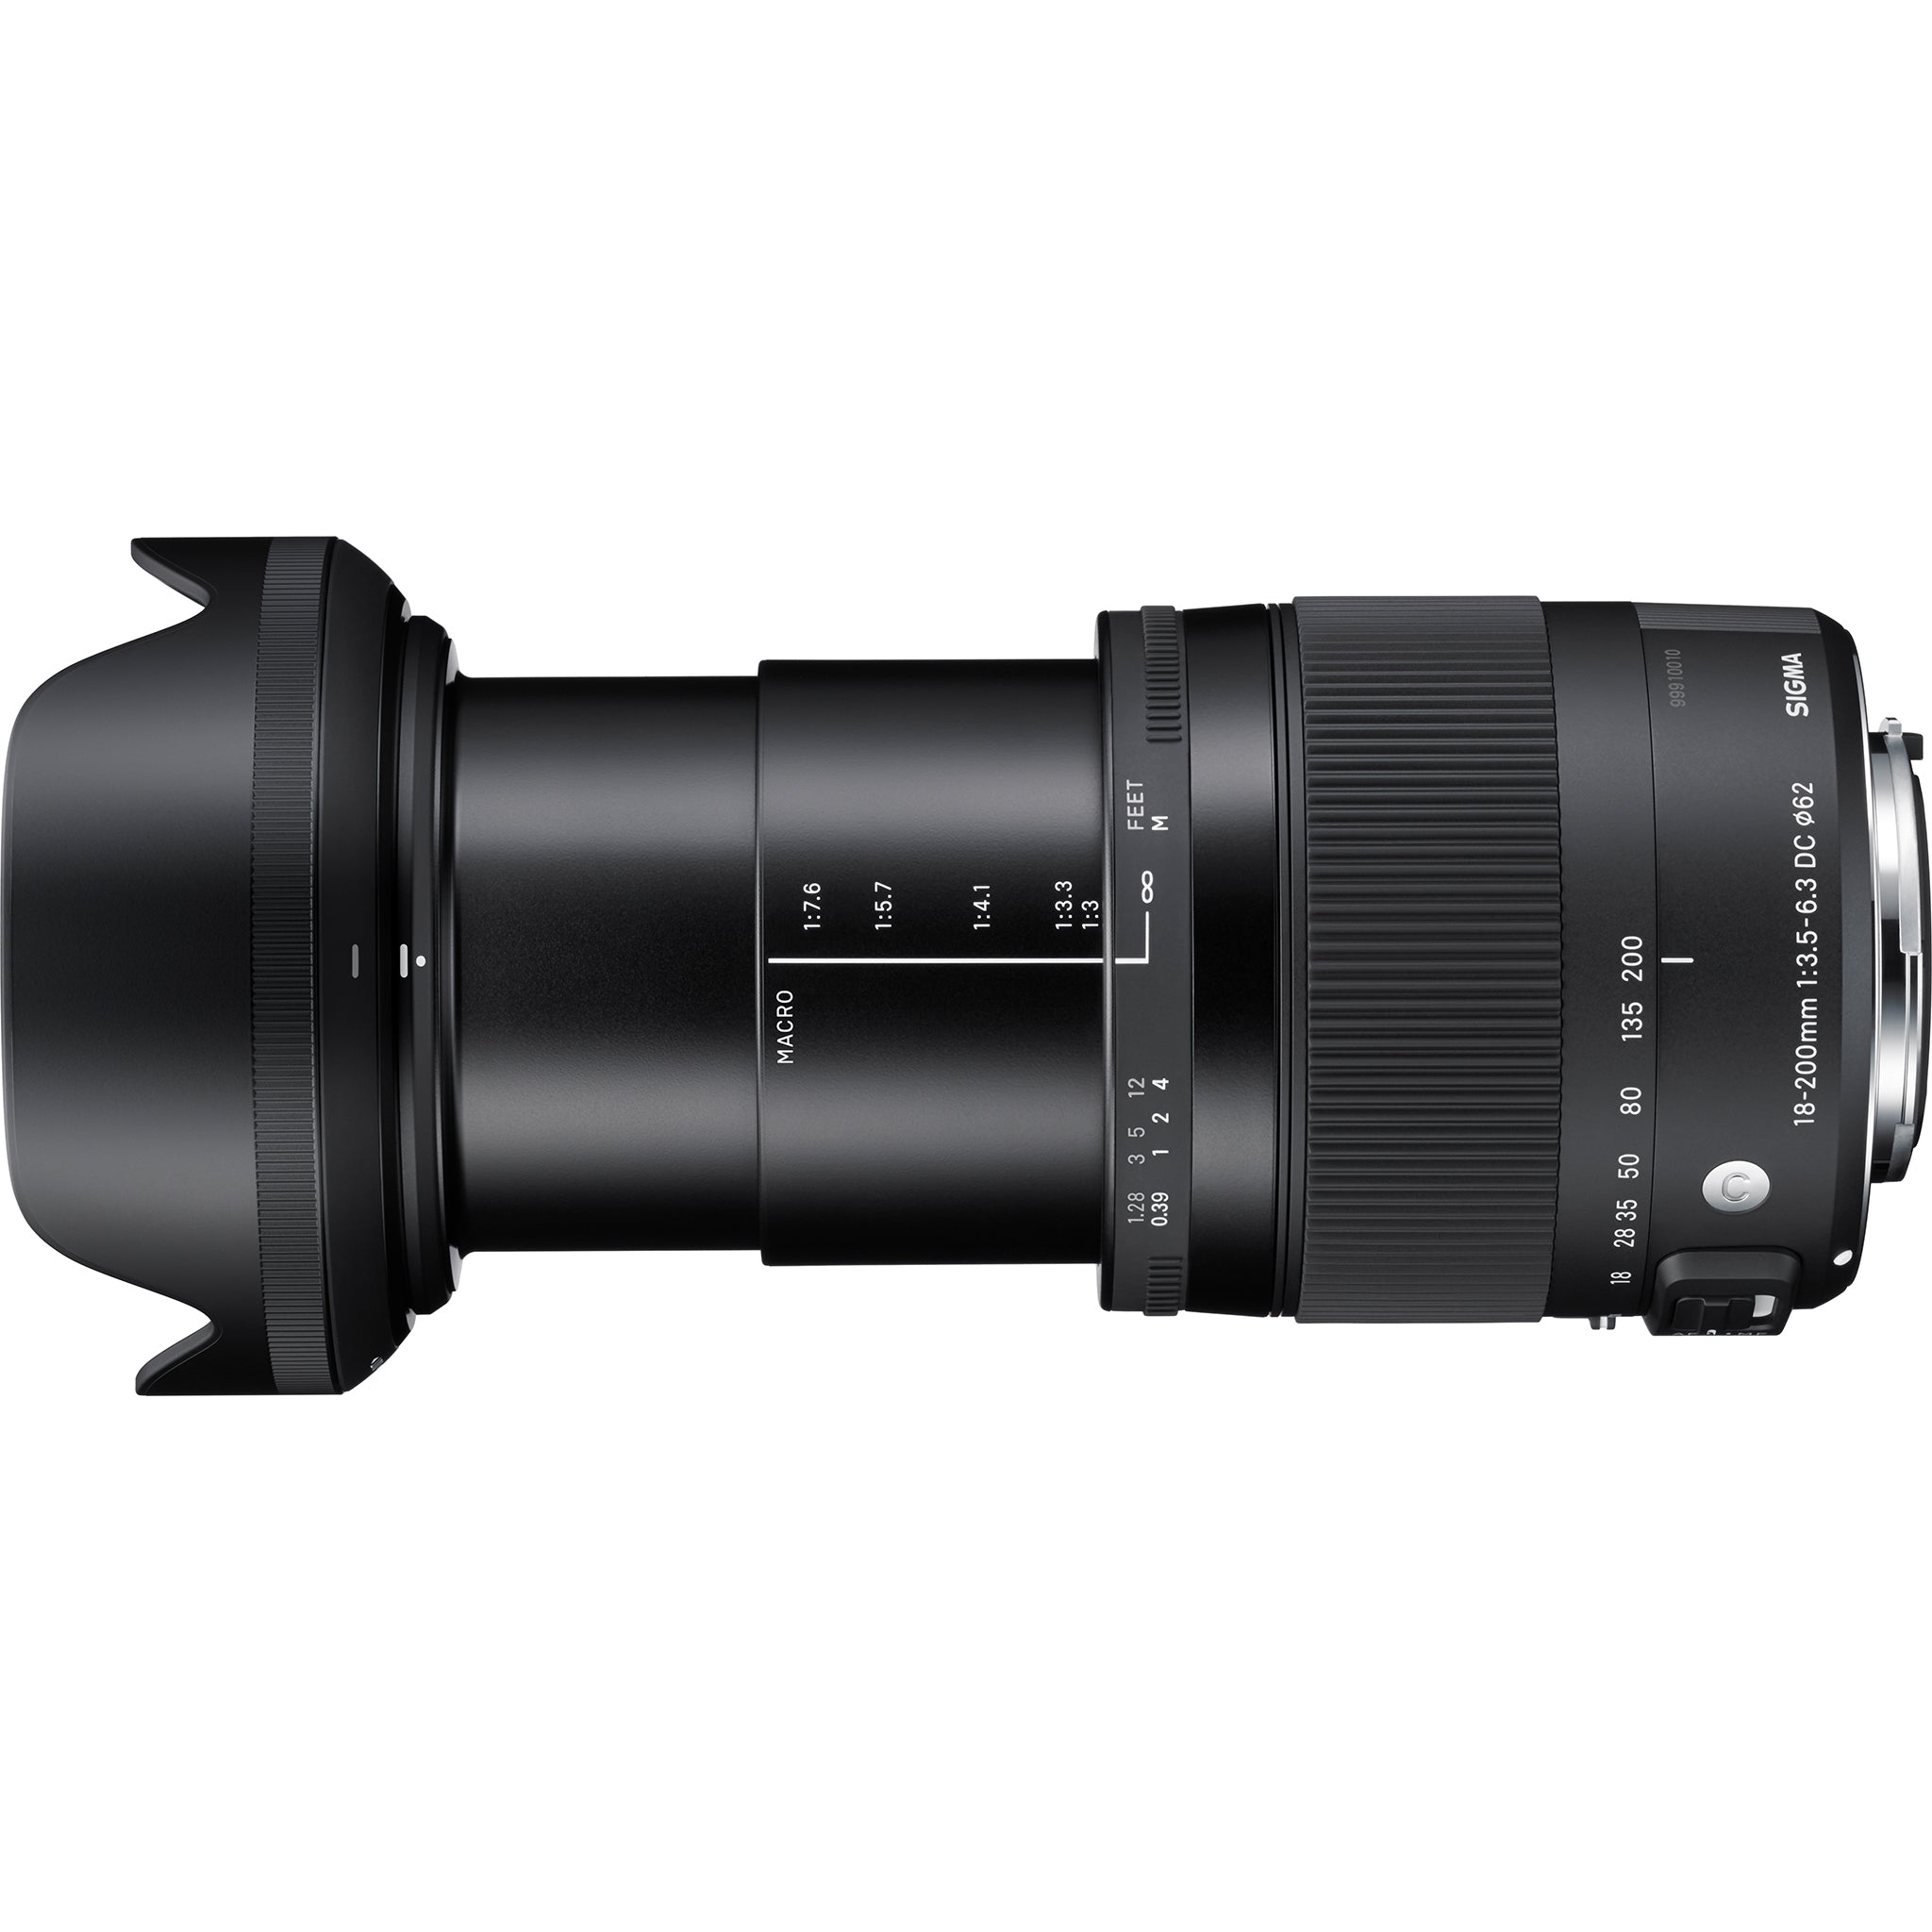 Sigma 18-200mm F3.5-6.3 Contemporary DC OS HSM Lens